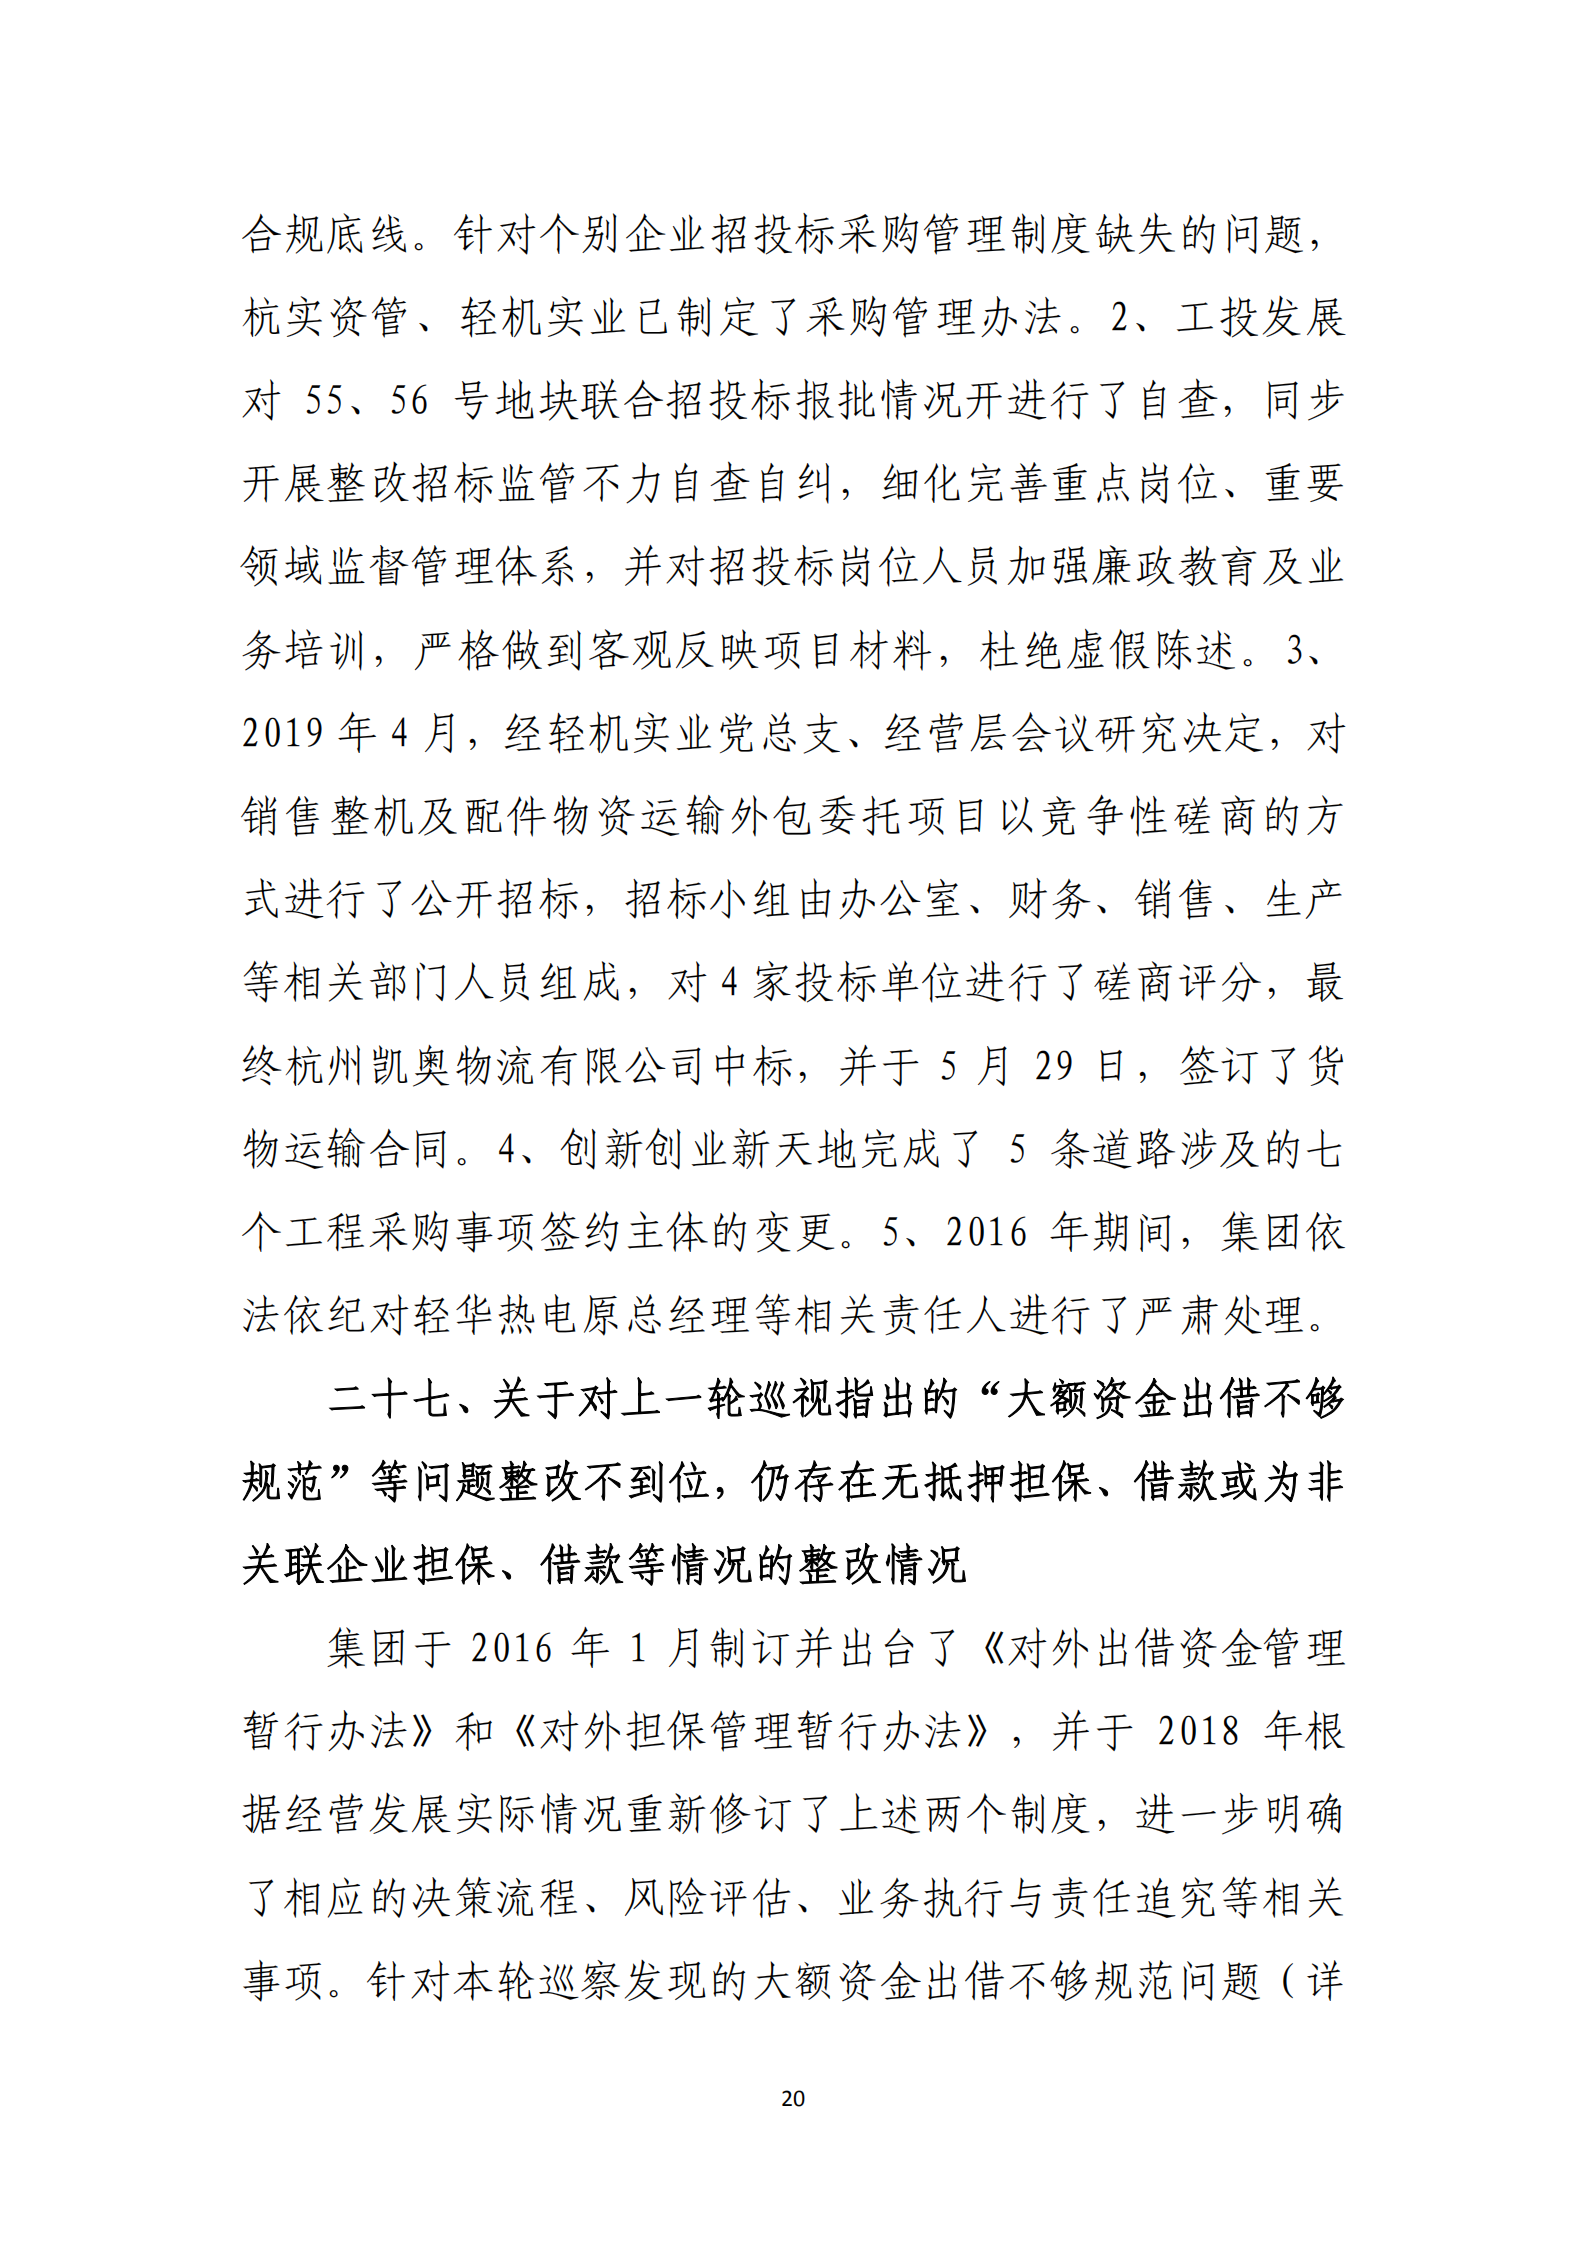 杭实集团党委关于巡察整改情况的通报_19.png